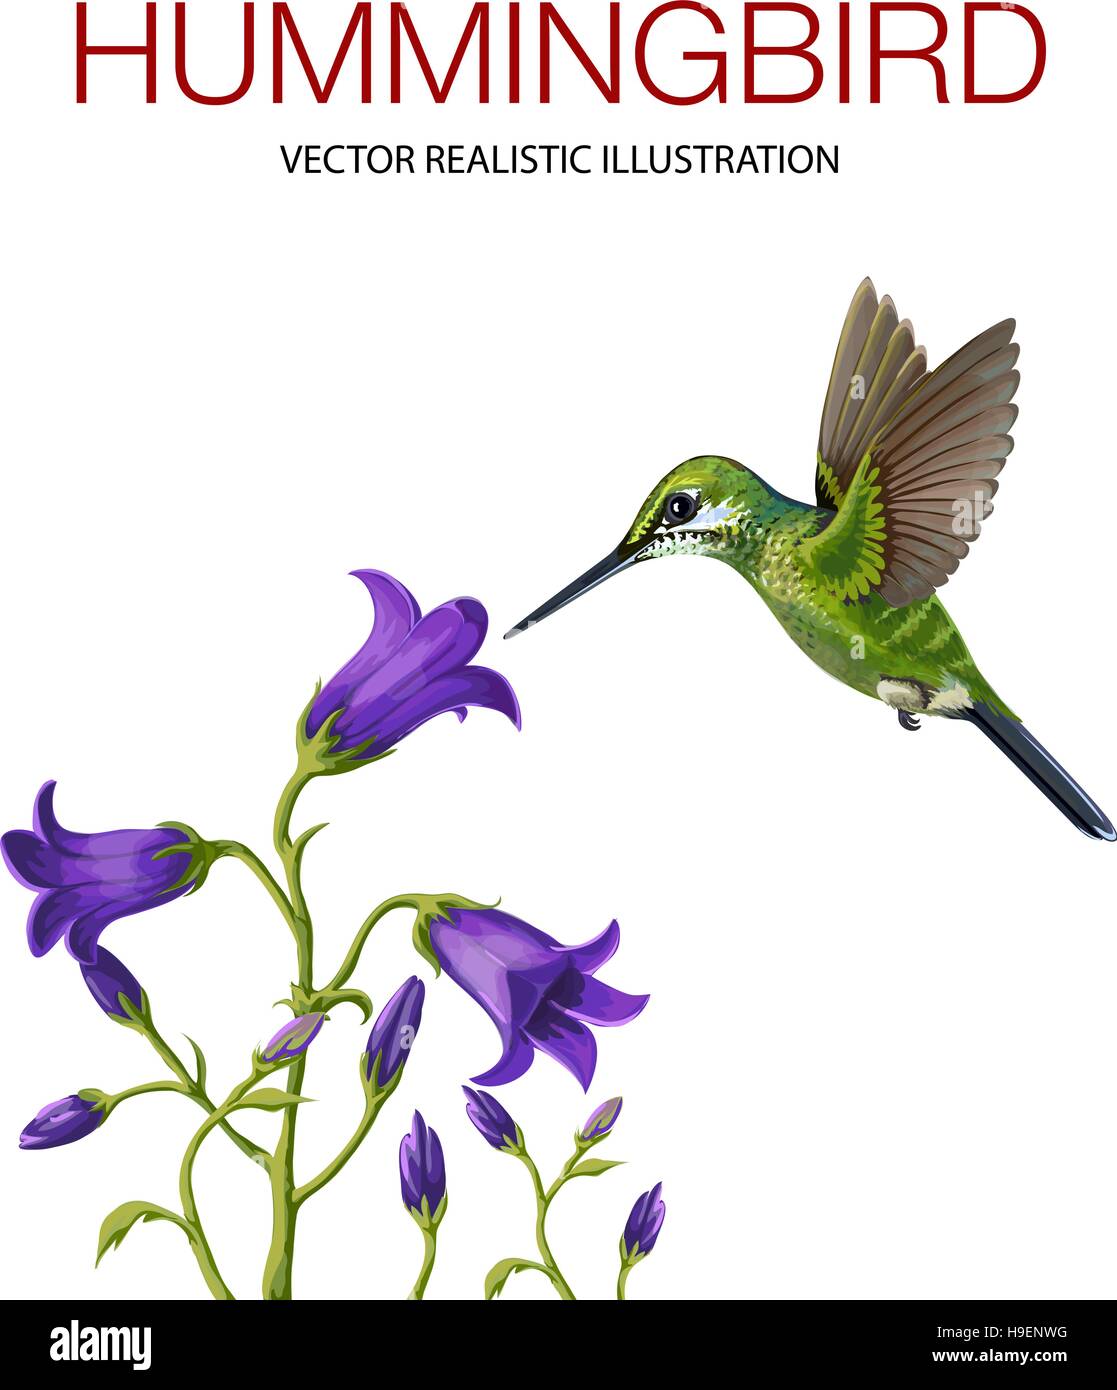 Hummingbird isolé sur fond blanc. Vector illustration réalisée dans un style réaliste Illustration de Vecteur